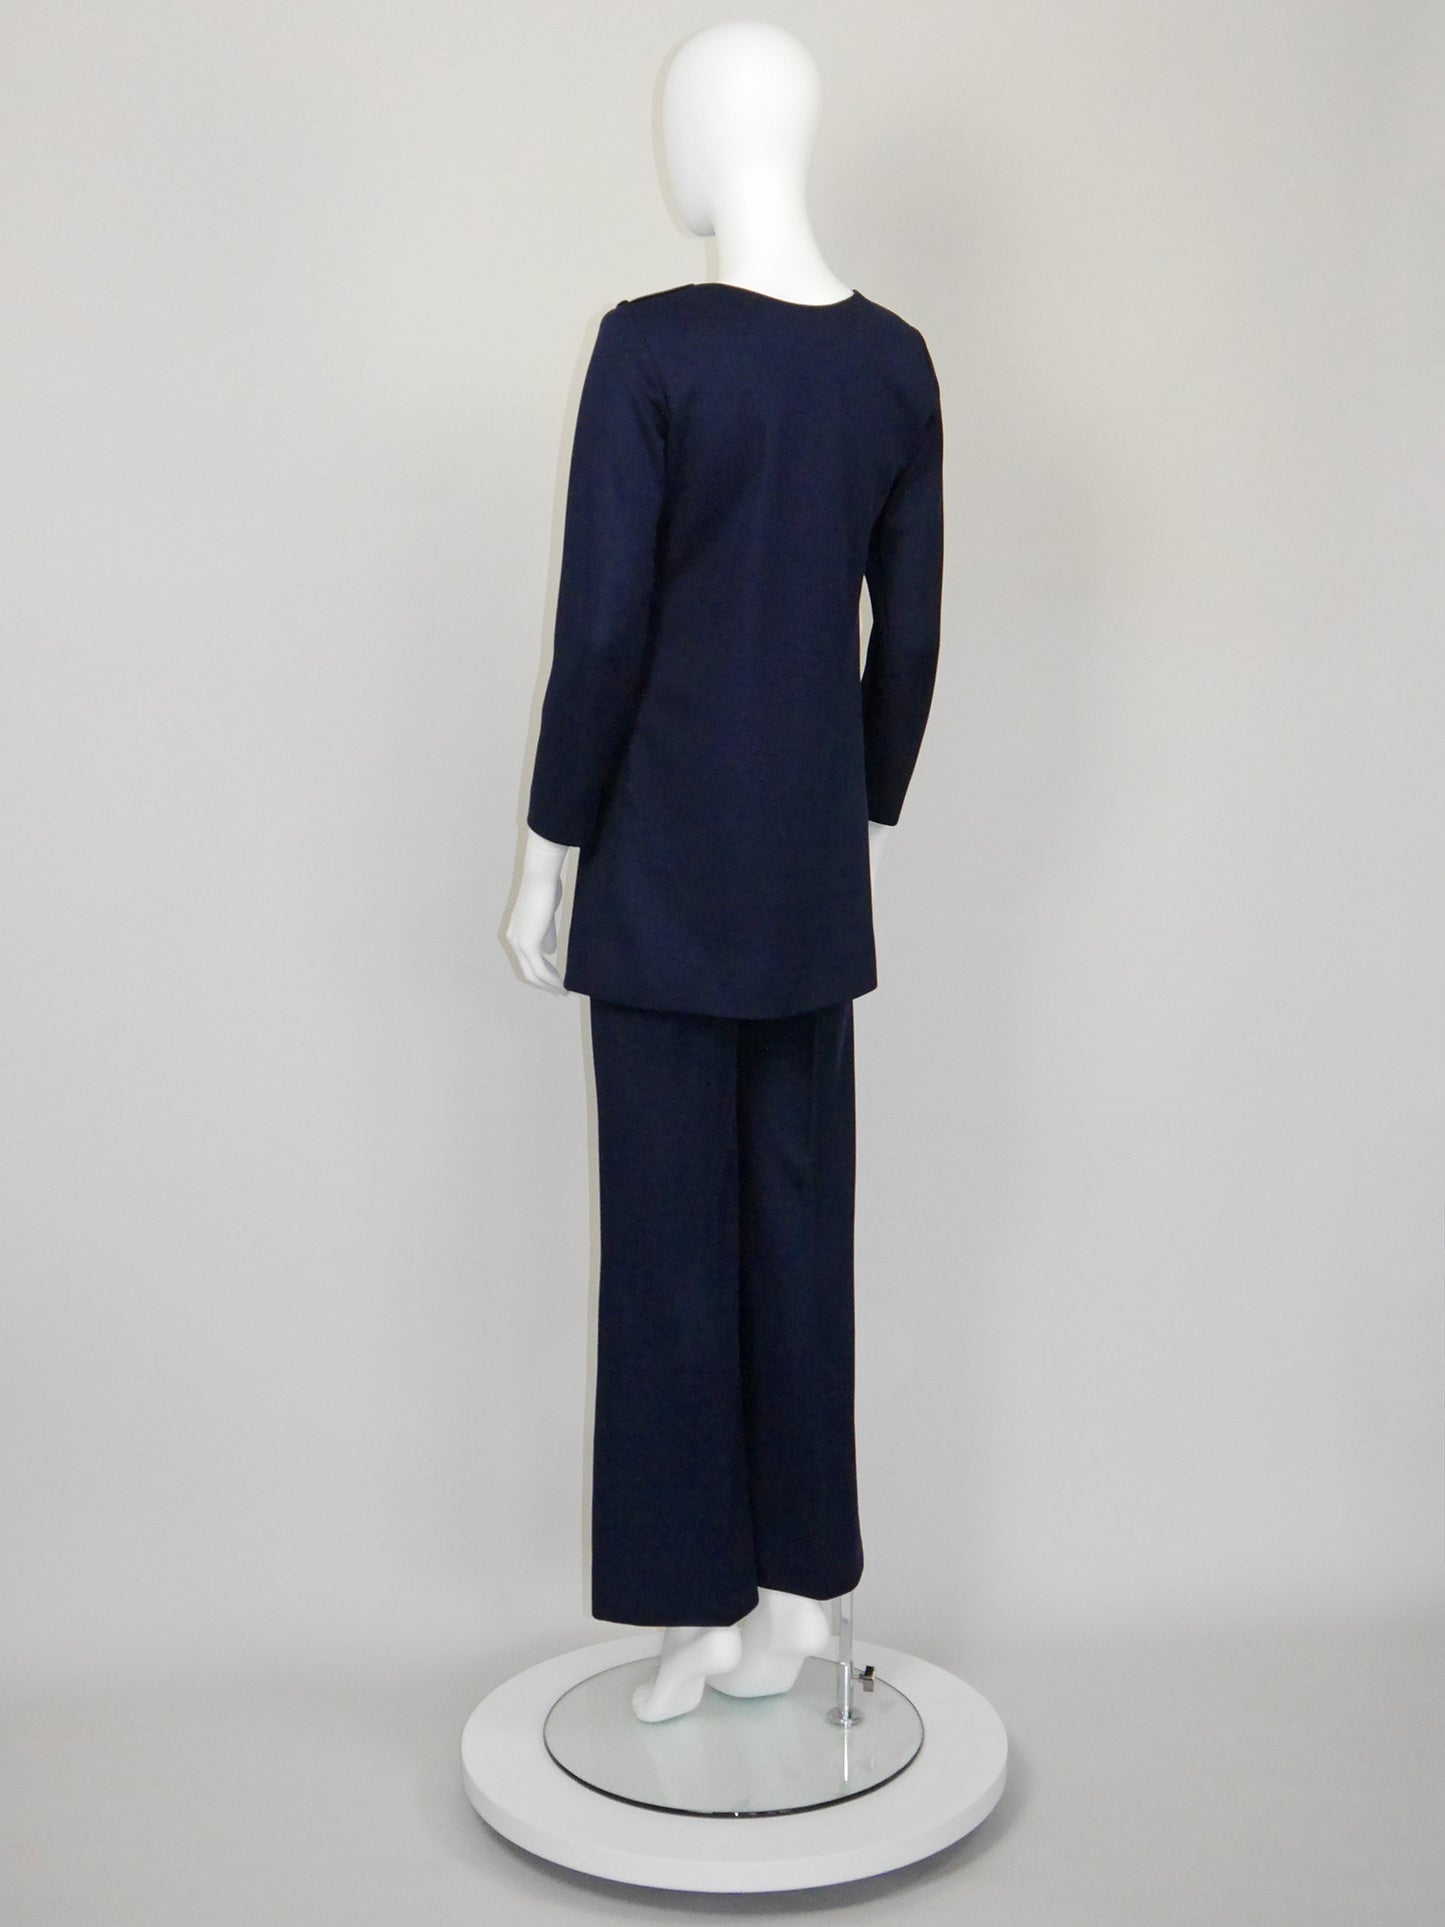 YVES SAINT LAURENT 1960s 1970s Vintage Dark Blue Tunic Top & Pants Suit Size XS